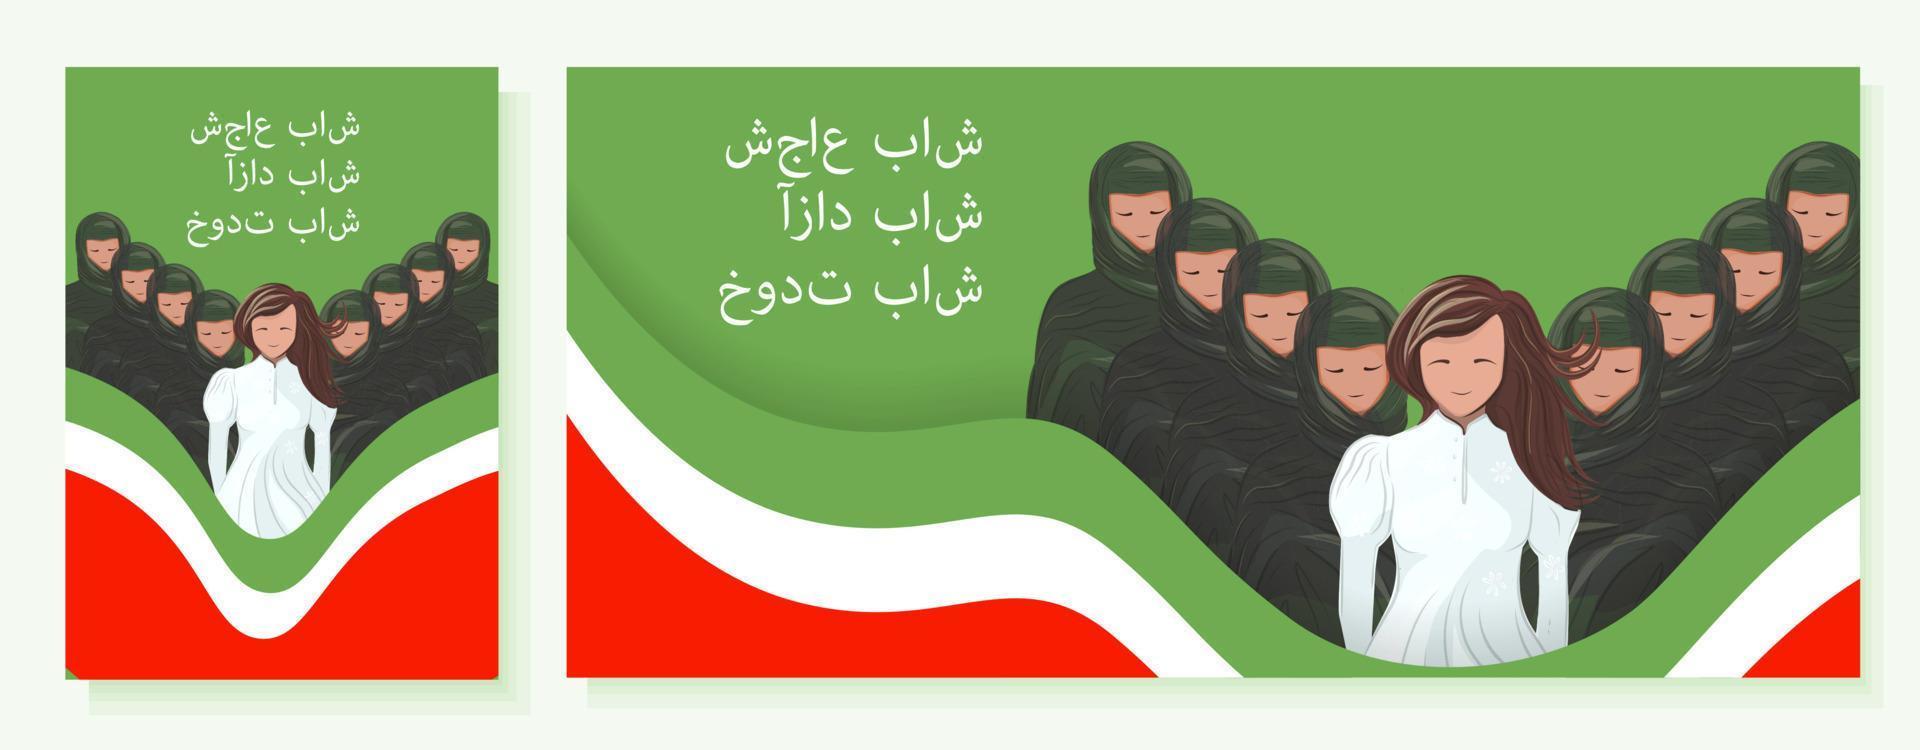 manifesto contro indossare il hijab, iraniano protesta. Da donna protesta nel iran.be coraggioso, sii libero, sii te stesso. vettore